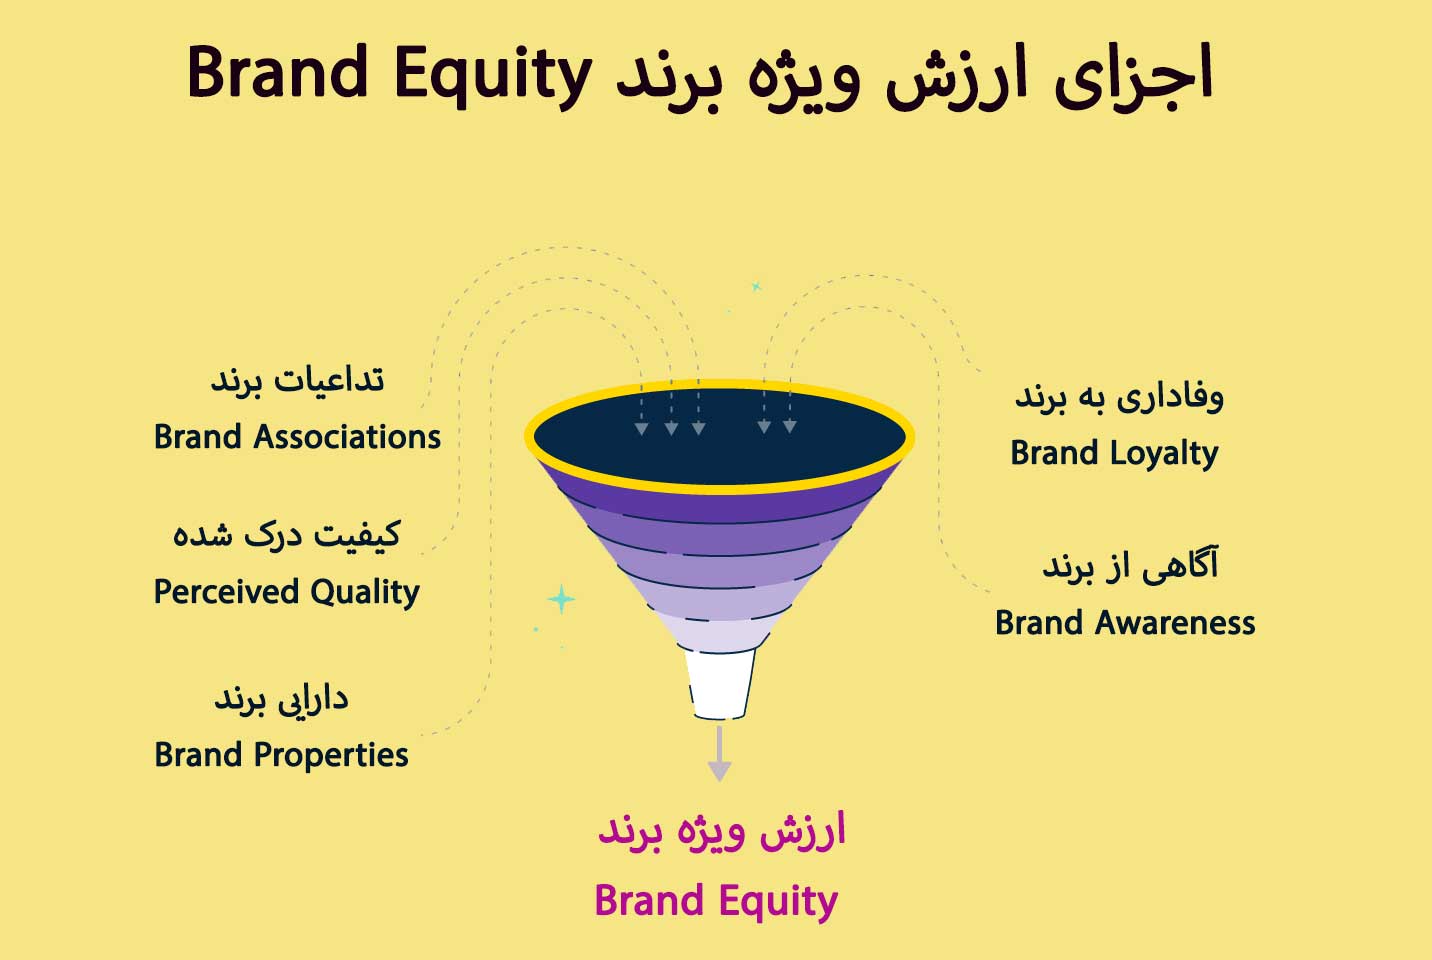  اجزای ارزش ویژه برند Brand Equity دیوید آکر